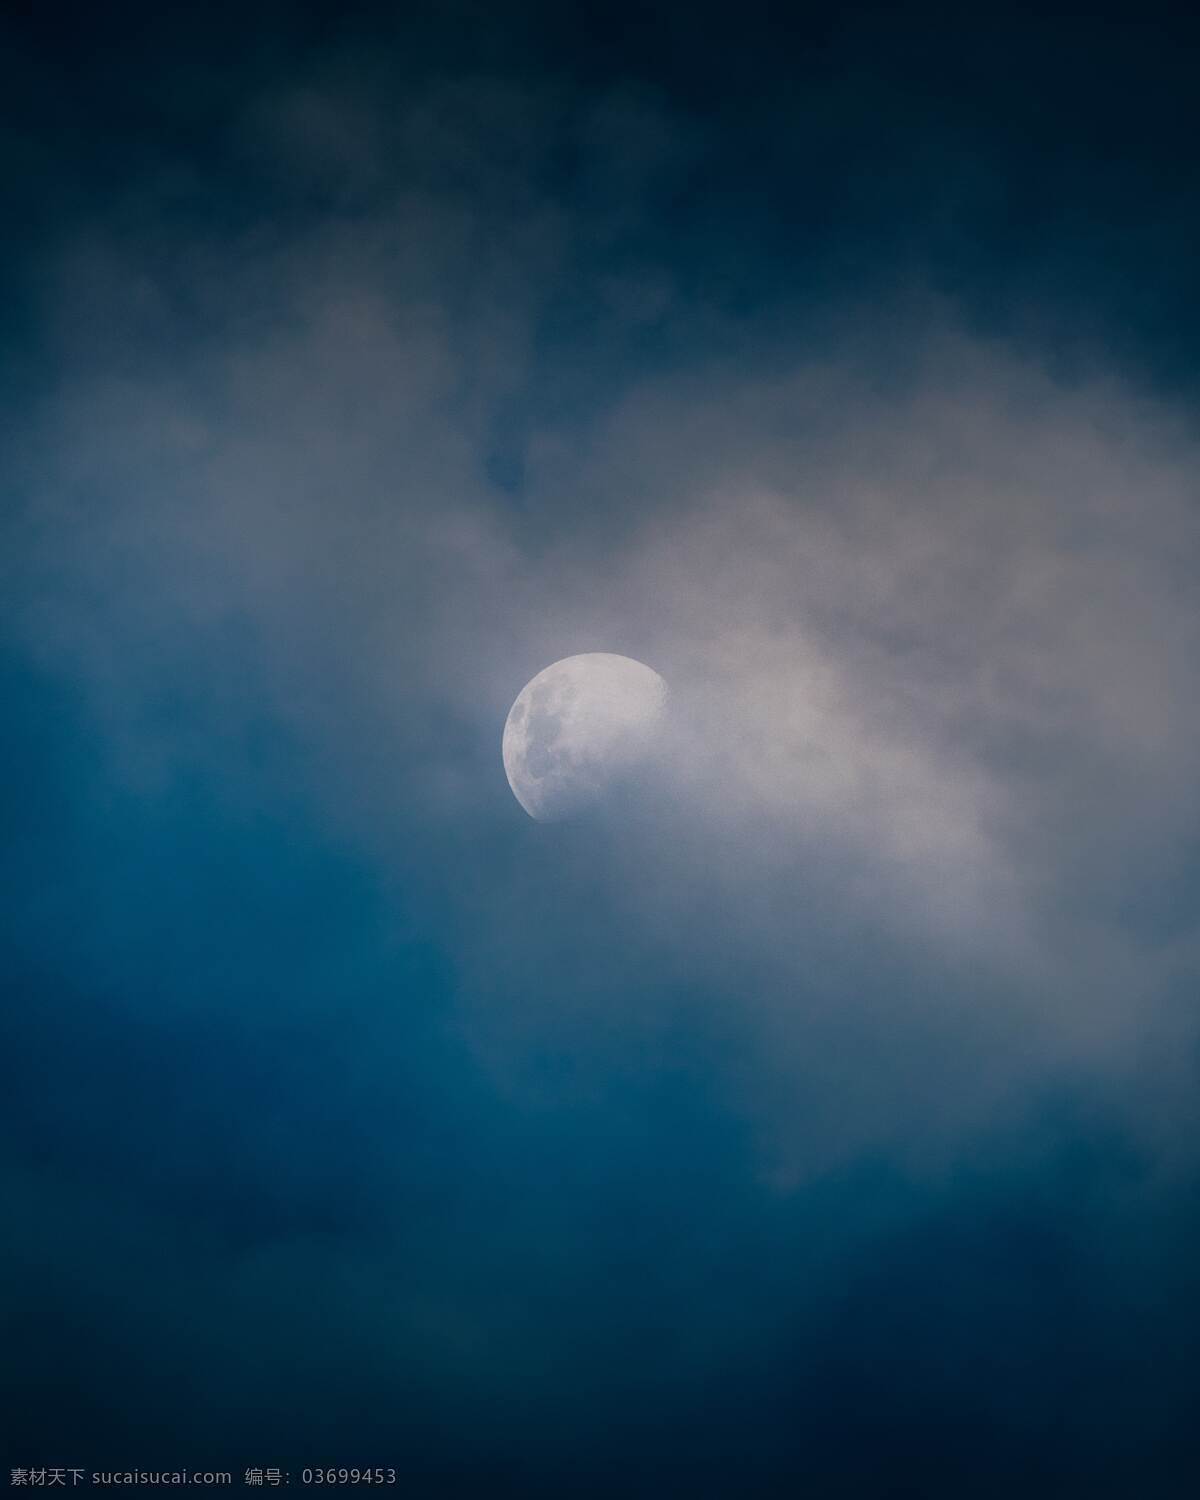 迷雾与月亮 月亮 迷雾 蓝色 梦幻 白色 黑色 夜晚 意境 朦胧 背景素材 自然景观 自然风景